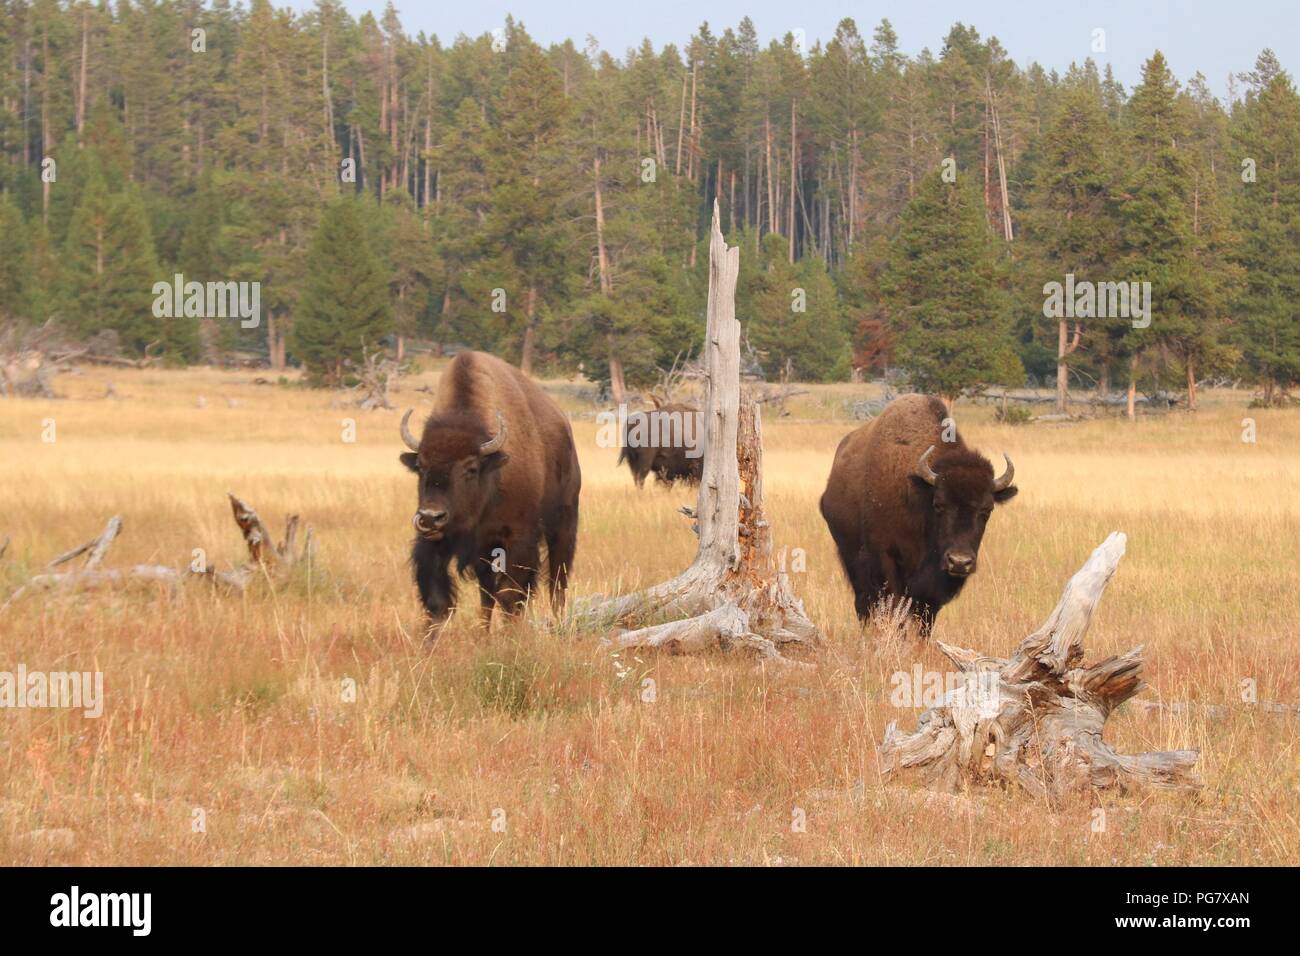 Des bisons dans le Parc National de Yellowstone, Wyoming. Yellowstone est le seul endroit aux États-Unis où le bison a vécu en continu depuis les temps préhistoriques. Banque D'Images